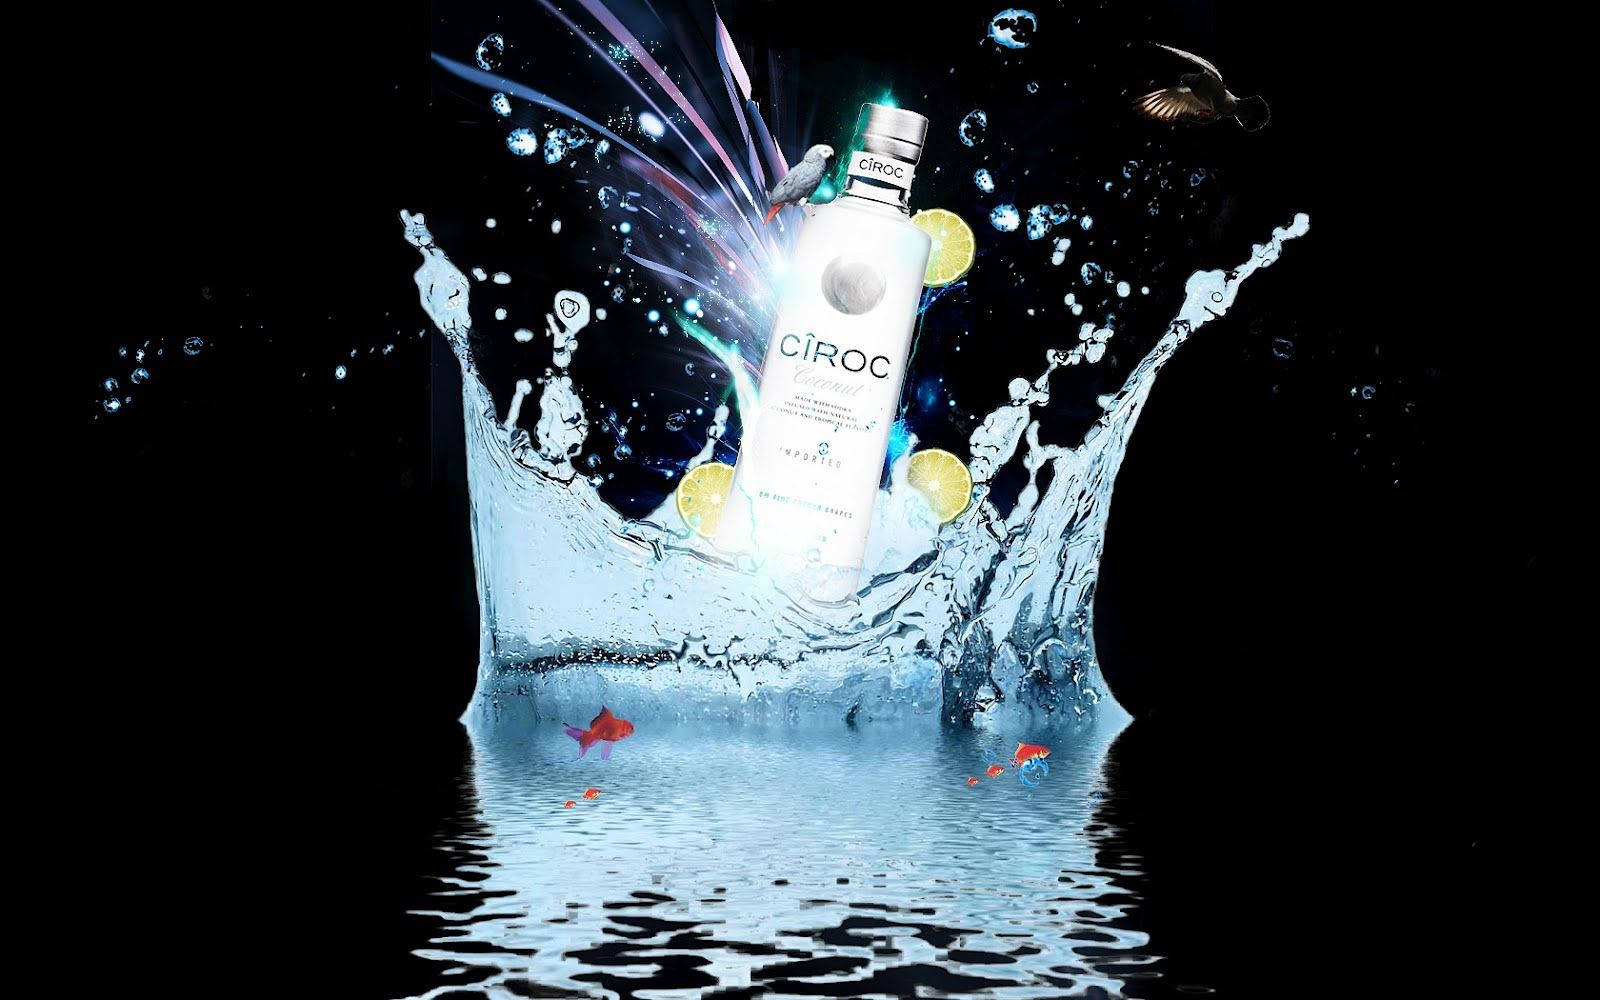 Cirocfranzösischer Wodka, Kokosnuss-flaschen-grafikdesign Wallpaper